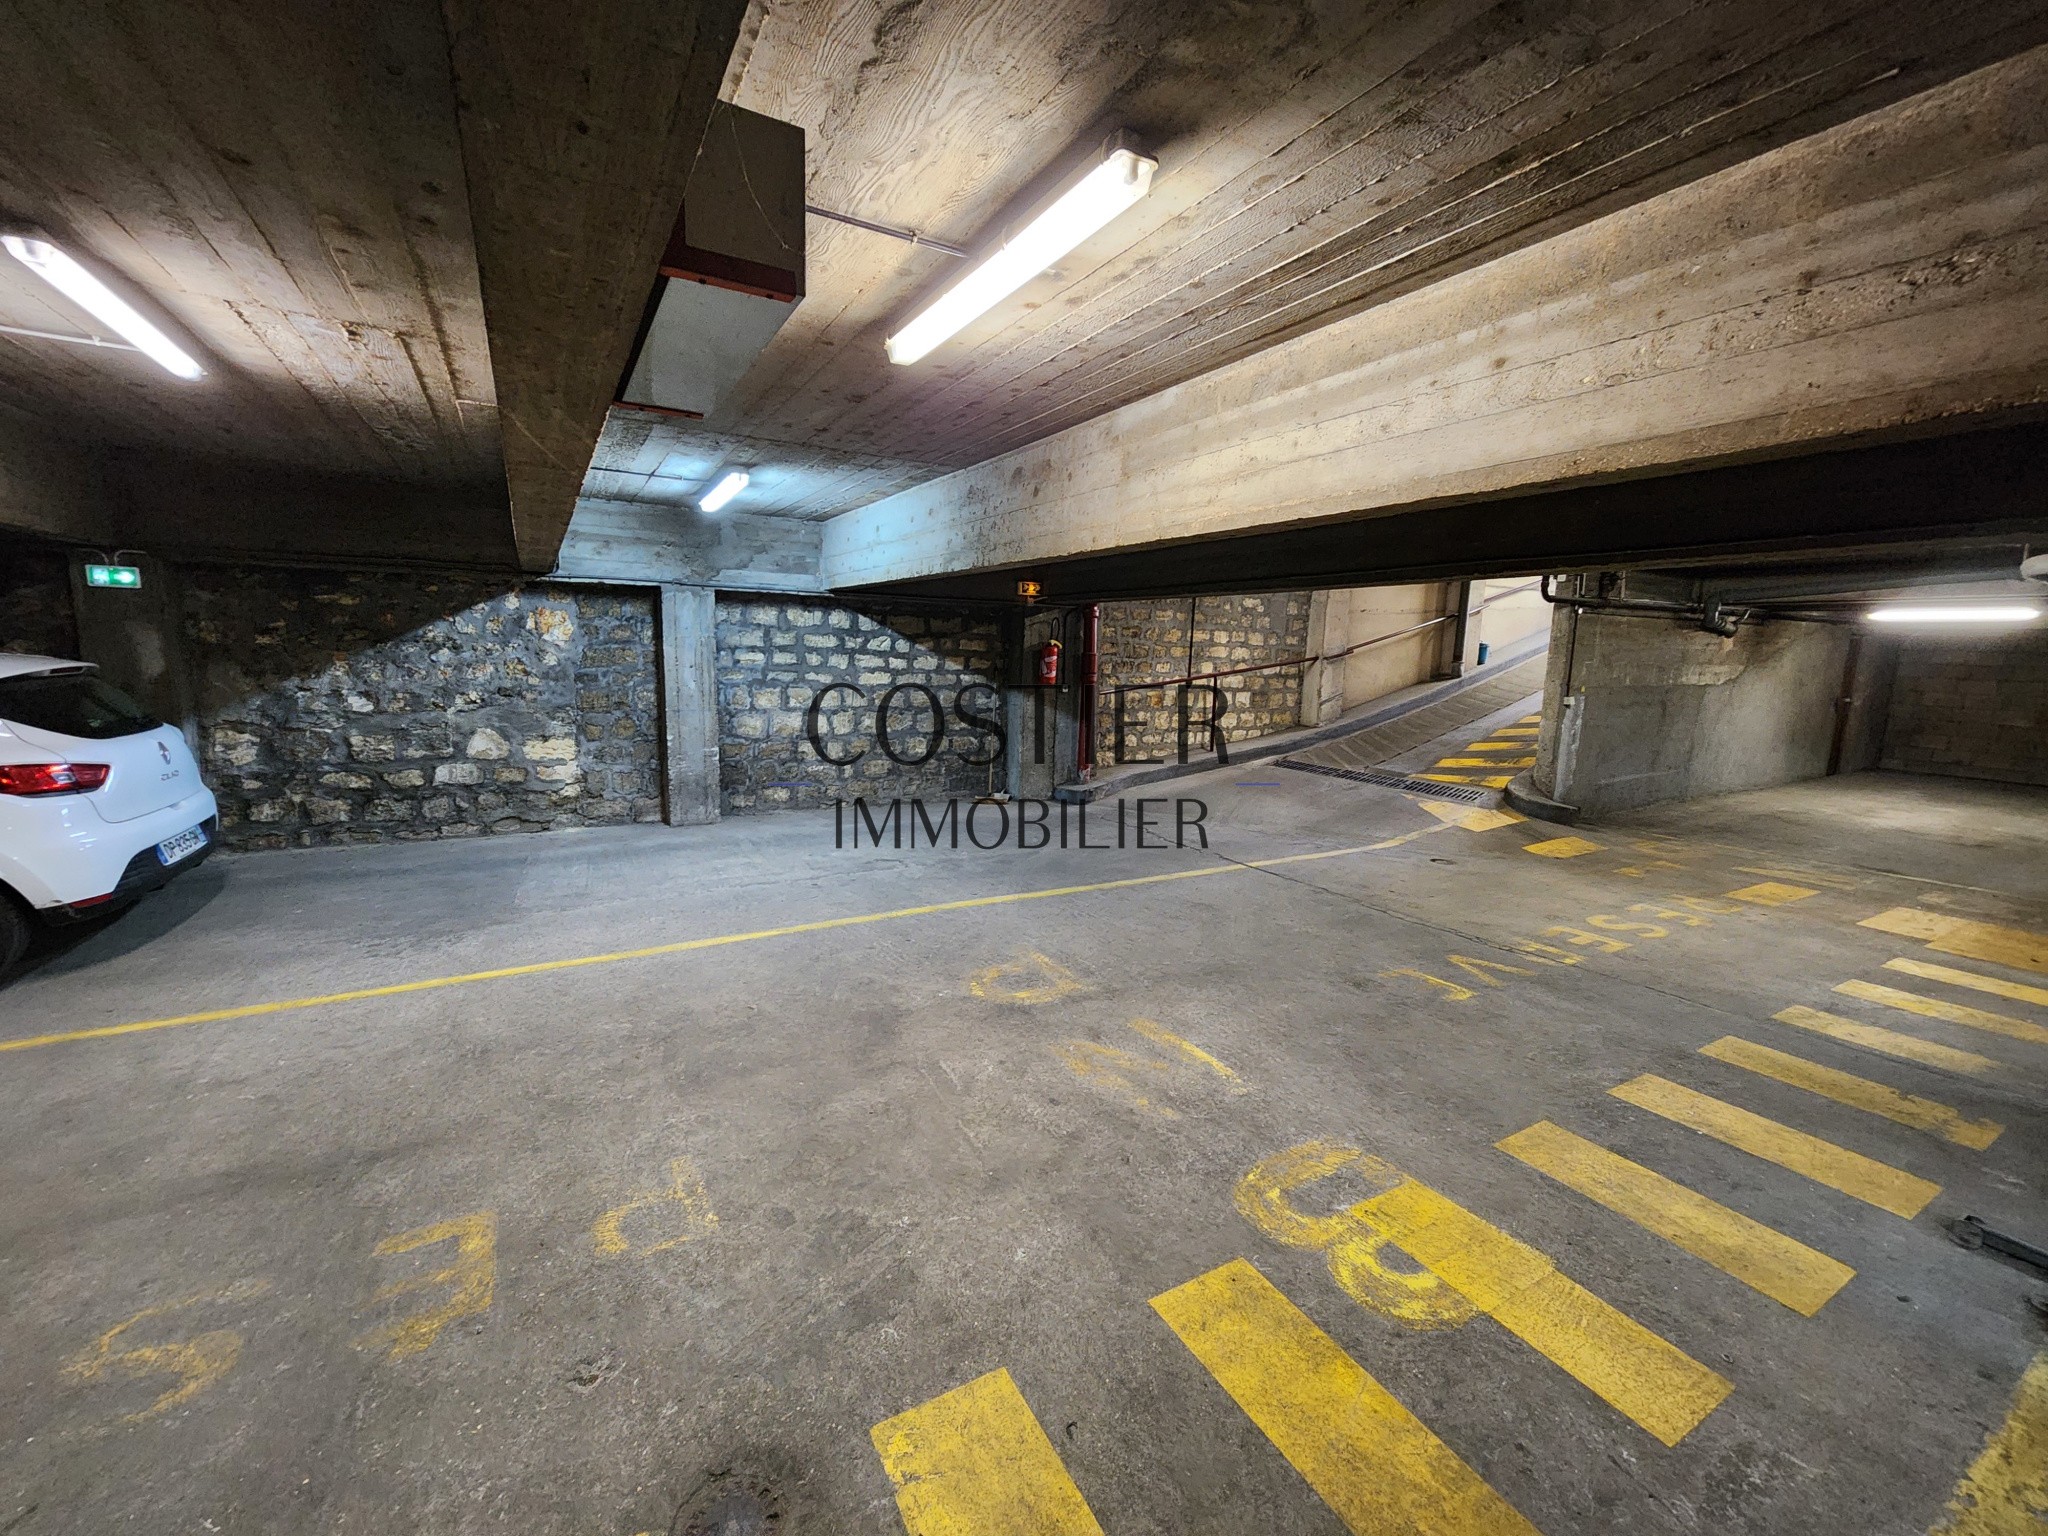 Vente Garage / Parking à Paris Batignolles-Monceaux 17e arrondissement 0 pièce